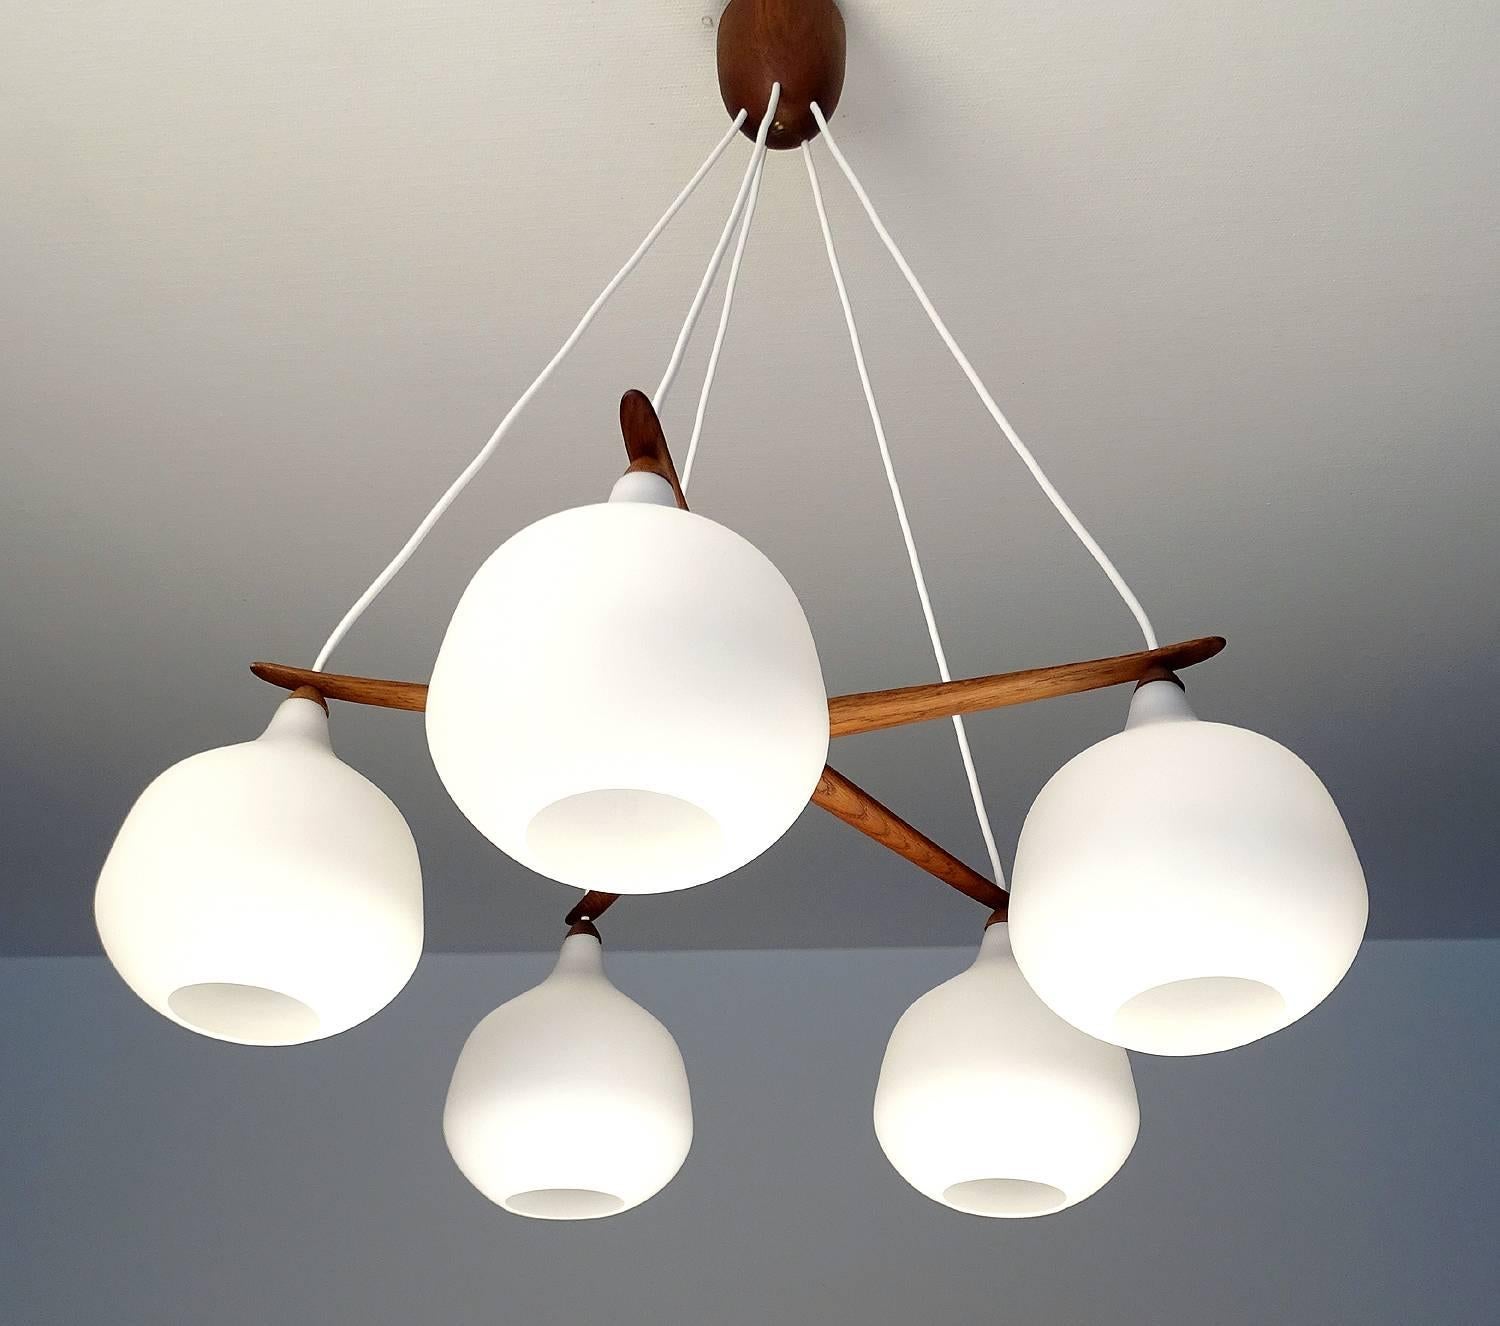 Mid-20th Century  Luxus Chandelier by Uno & Osten Kristiansson Glass Globes Lamp Danish Modern